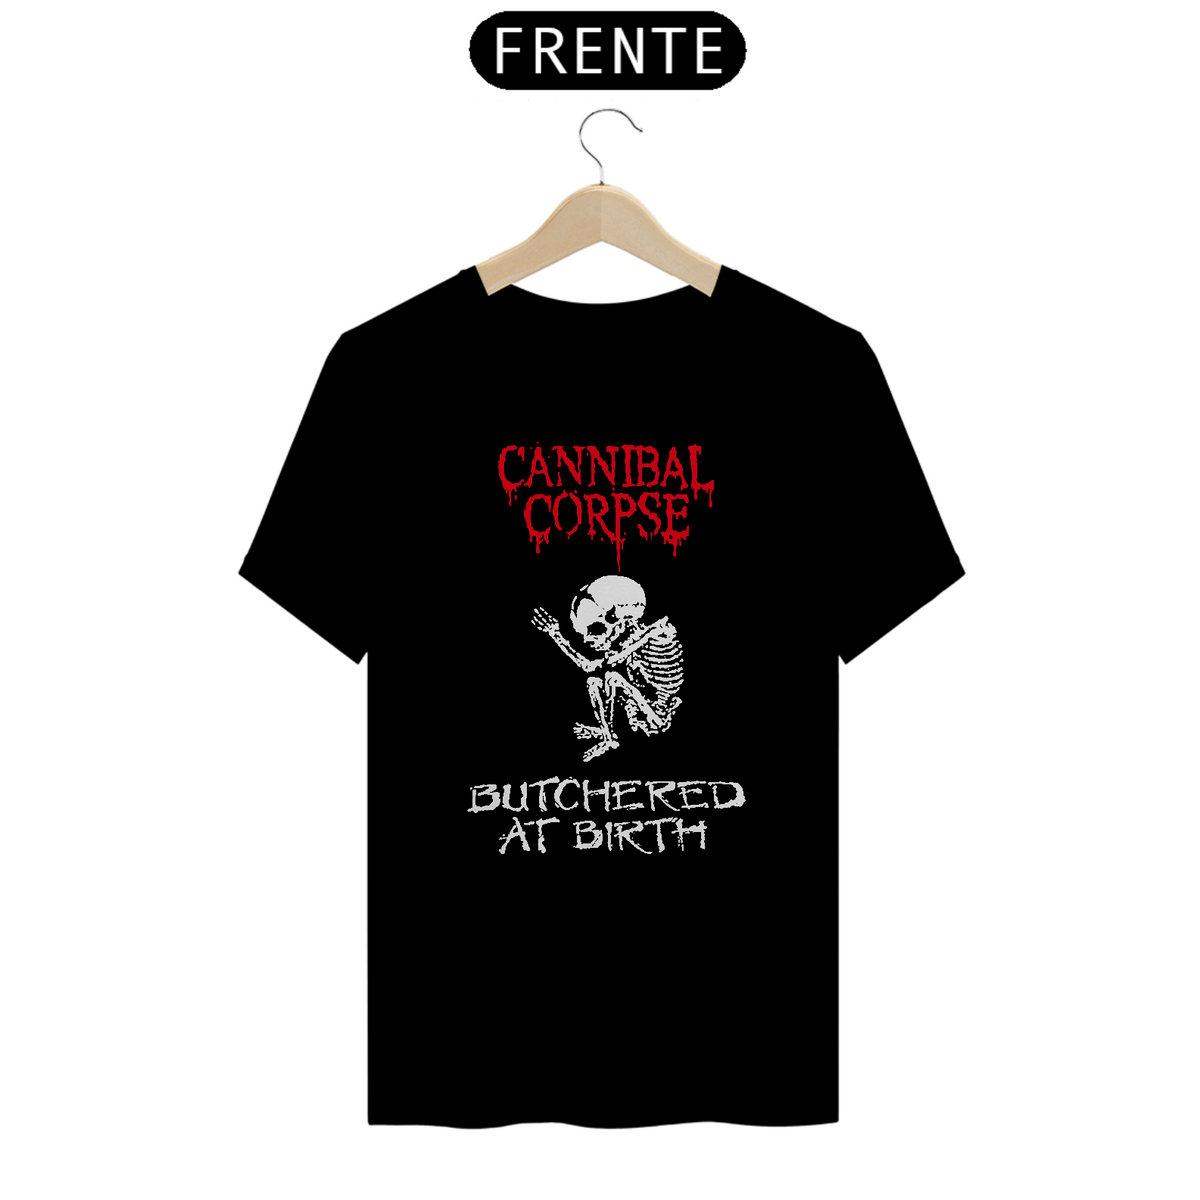 Nome do produto: Cannibal Corpse 01